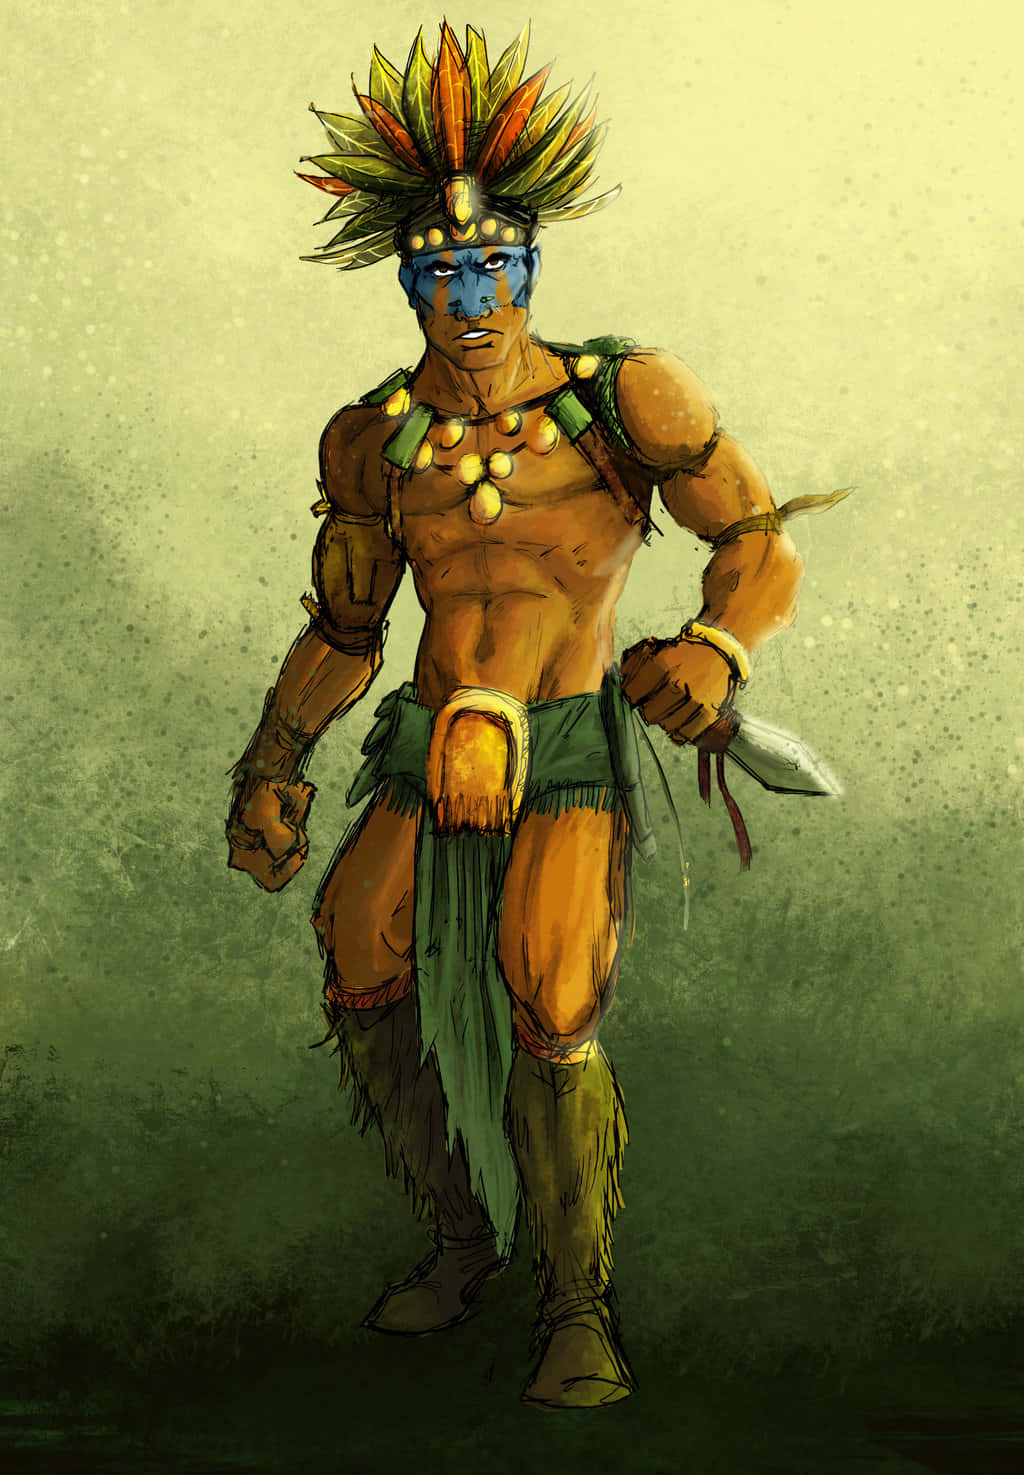 An Aztec Warrior stands firm, ready for battle Wallpaper